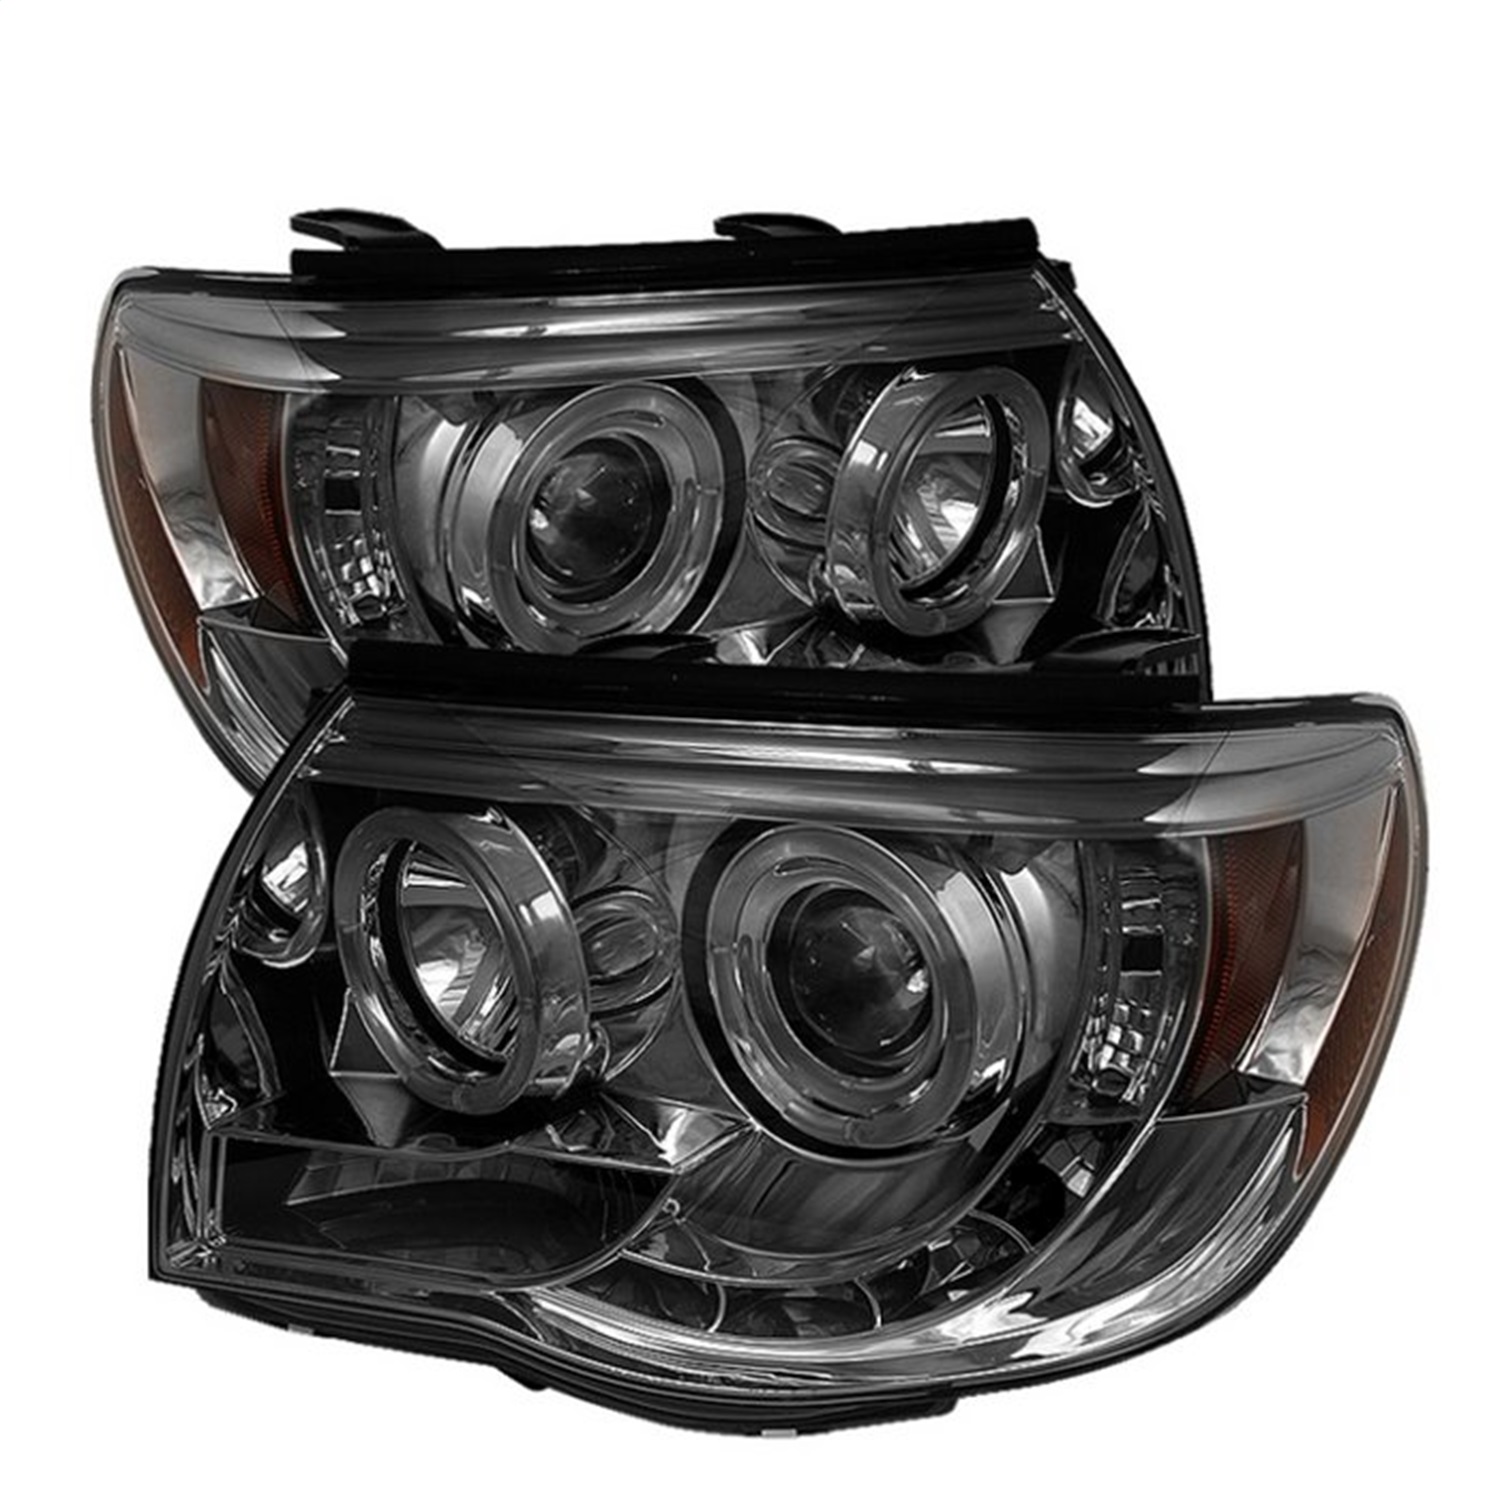 Spyder Auto 5011930 Halo LED Projector Headlights Fits 05-11 Tacoma